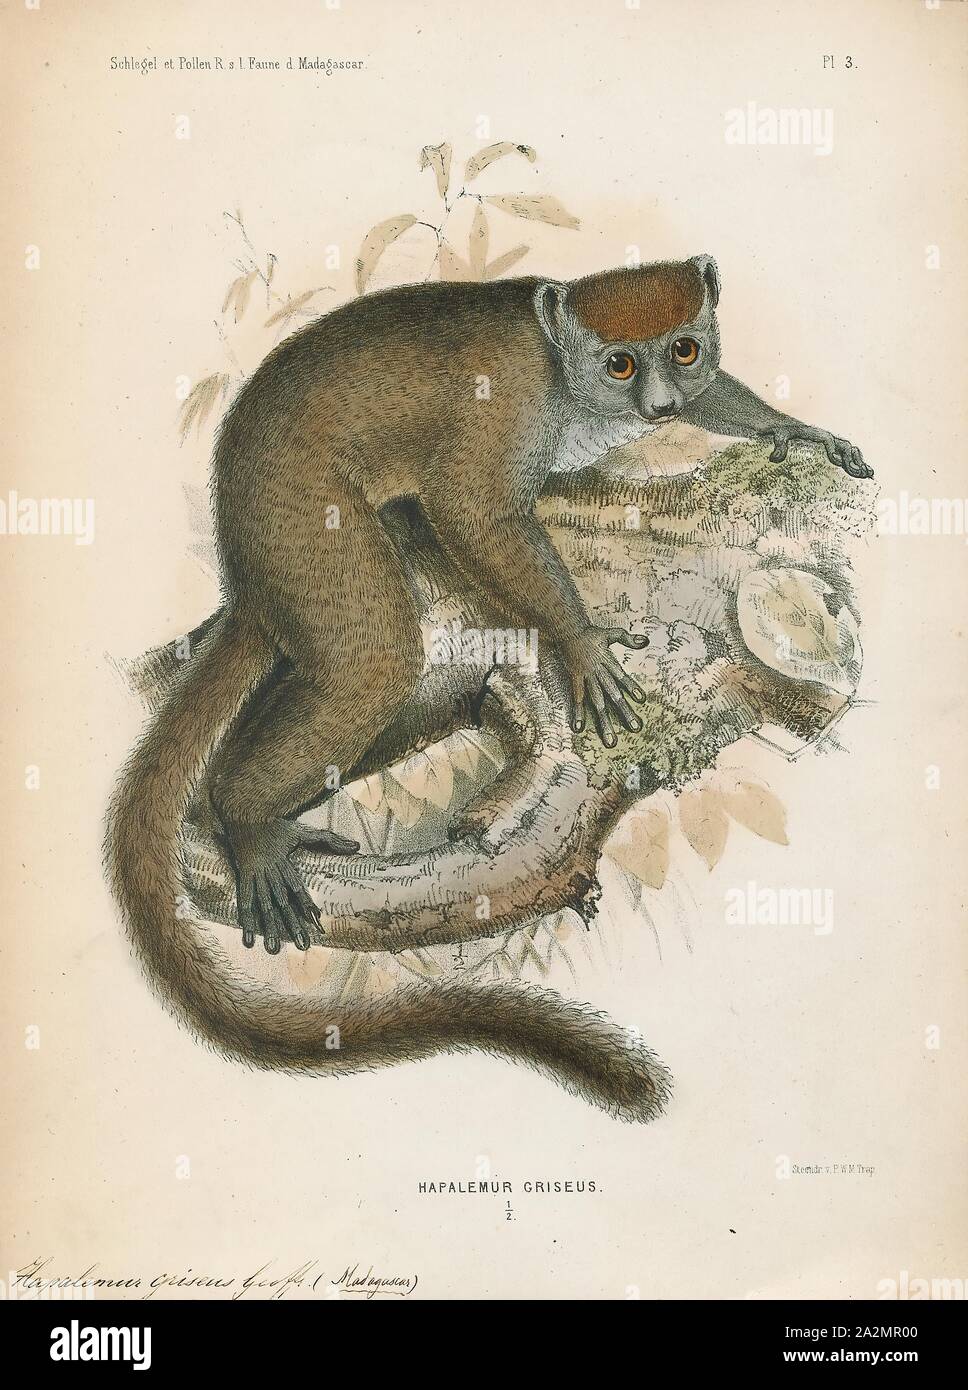 Il Hapalemur griseus, stampa la minore orientale bamboo lemur (Hapalemur griseus), noto anche come il grigio lemure di bambù, il grigio lemure dolce e il lemure Mahajanga è un lemure piccolo endemica del Madagascar, con tre sottospecie nota. Come suggerisce il suo nome, l'orientale minore lemure bamboo si nutre prevalentemente di bambù. I lemuri del genere Hapalemur hanno più destrezza manuale e la coordinazione tra mani e occhi rispetto alla maggior parte dei lemuri. Essi sono verticali arrampicatori e saltare da una levetta a levetta in spesse foreste di bambù., 1868 Foto Stock